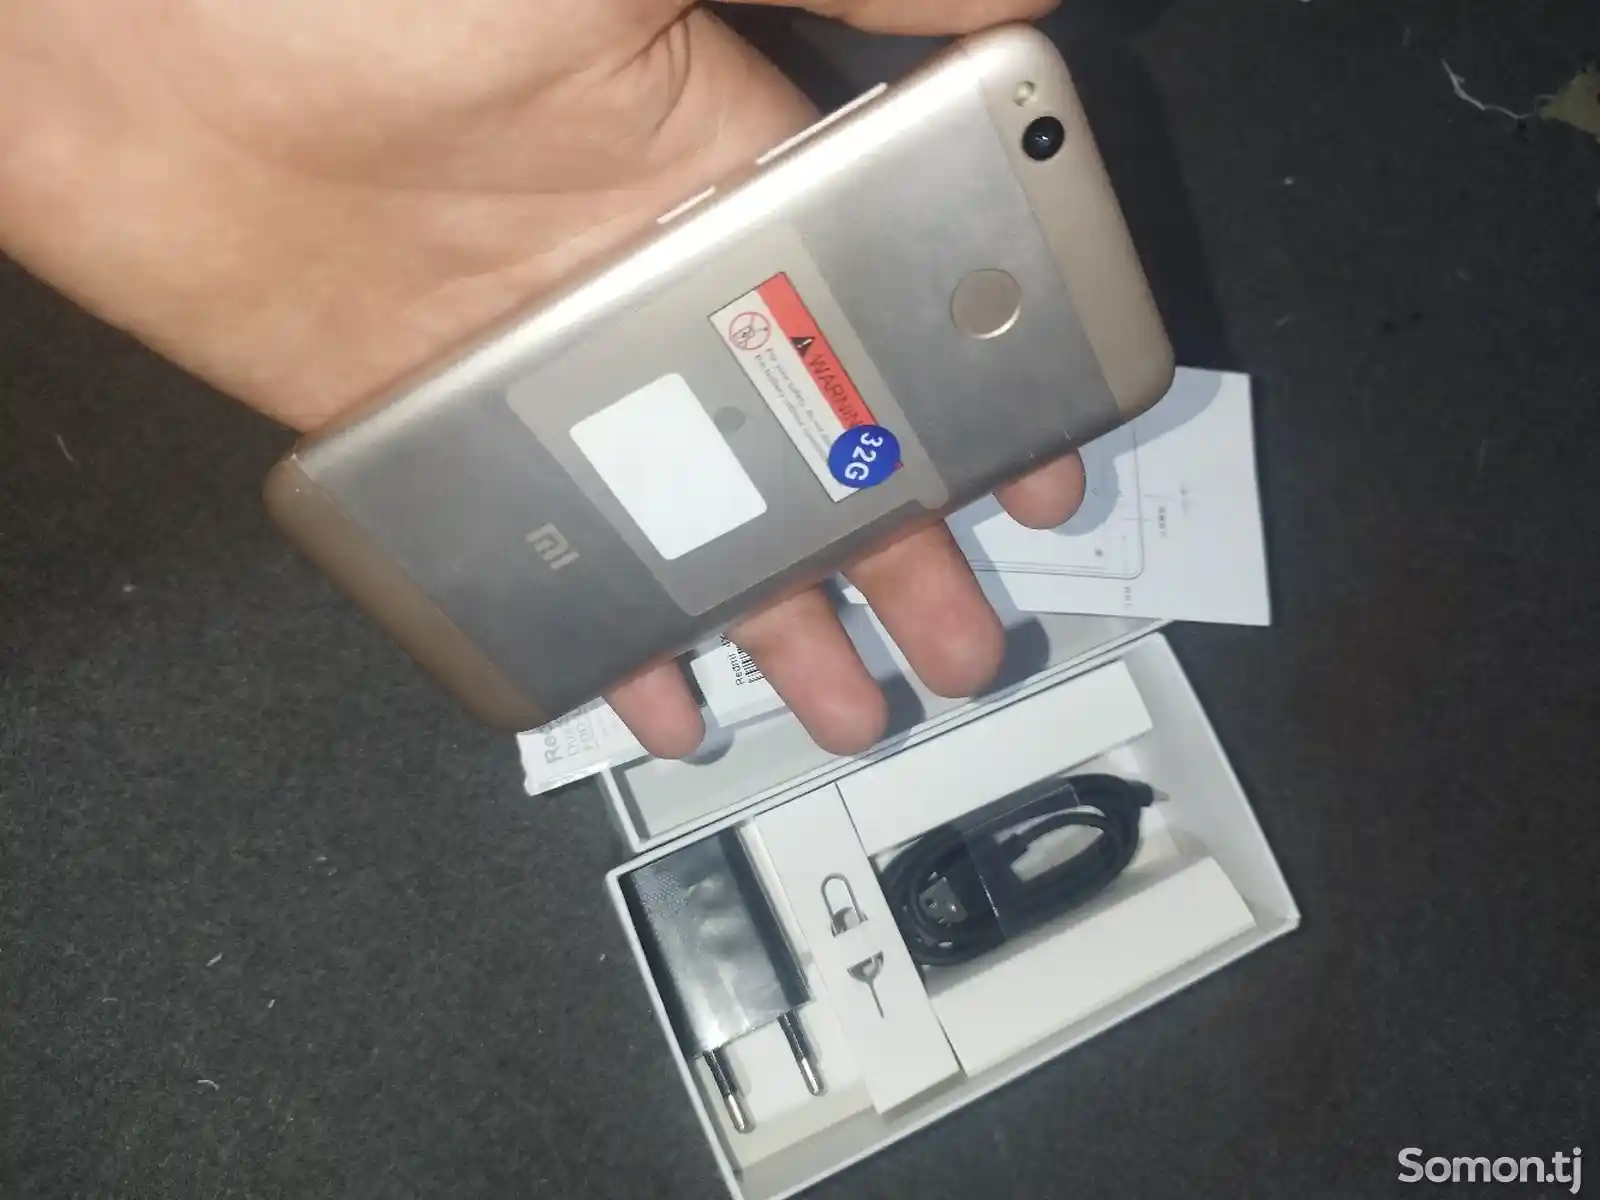 Xiaomi Redmi 4x-2